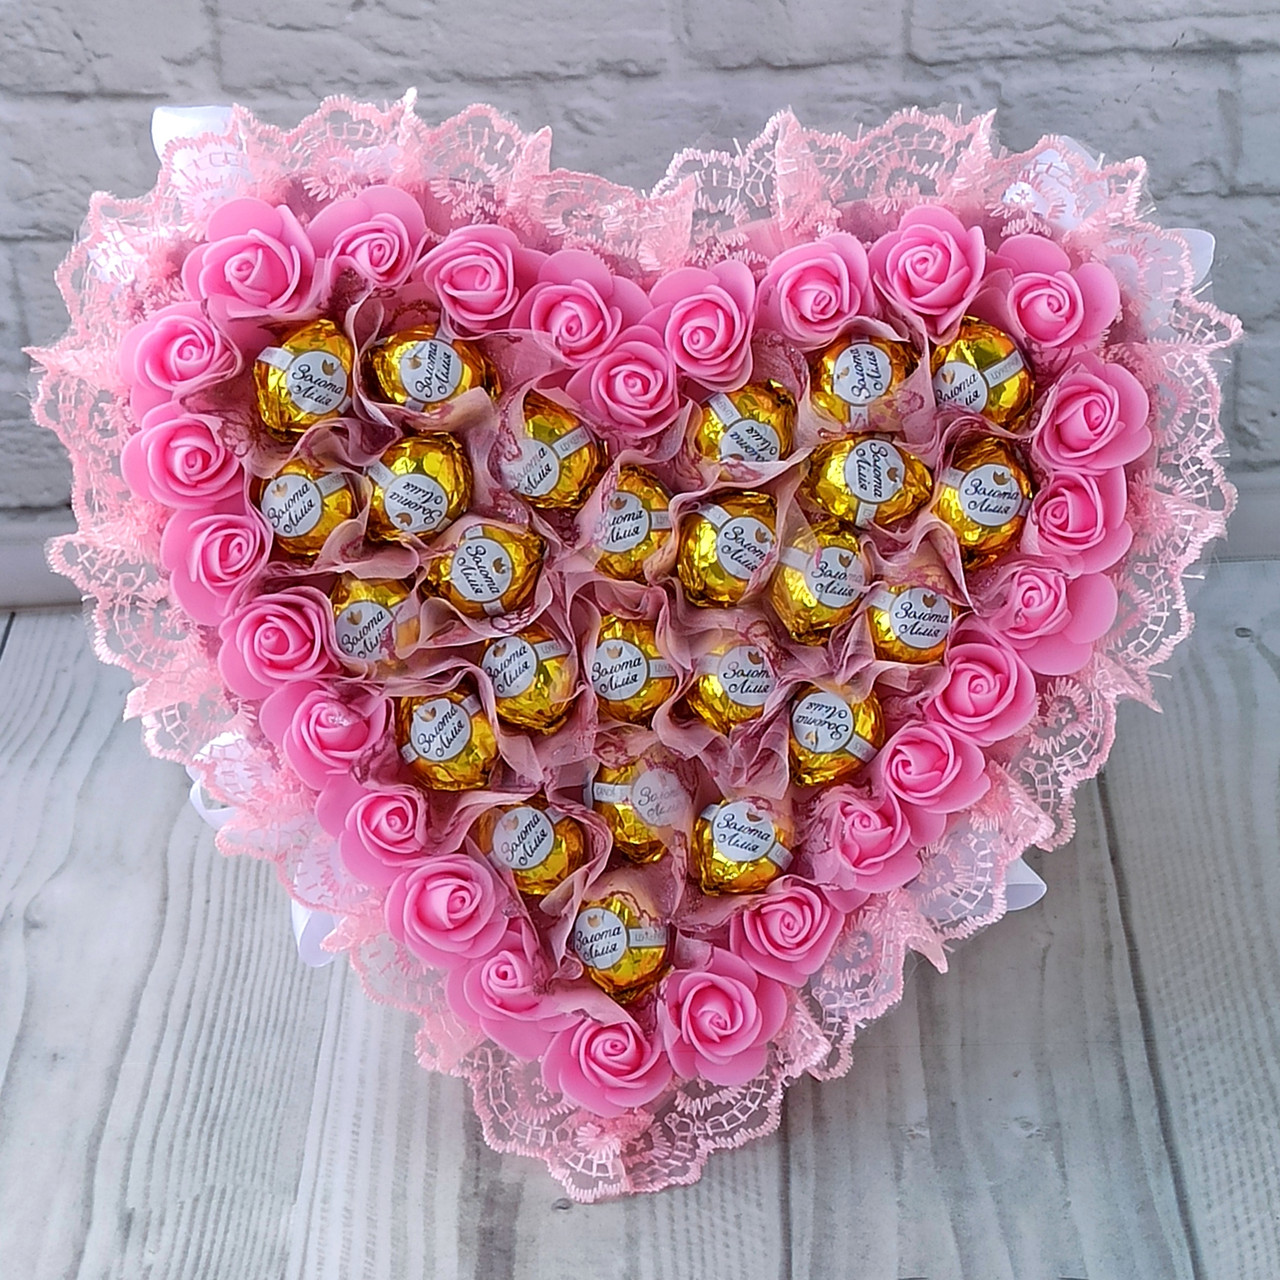 Рожевий букет із цукерками солодкий незвичайний подарунок для коханої у формі серця на день закоханих